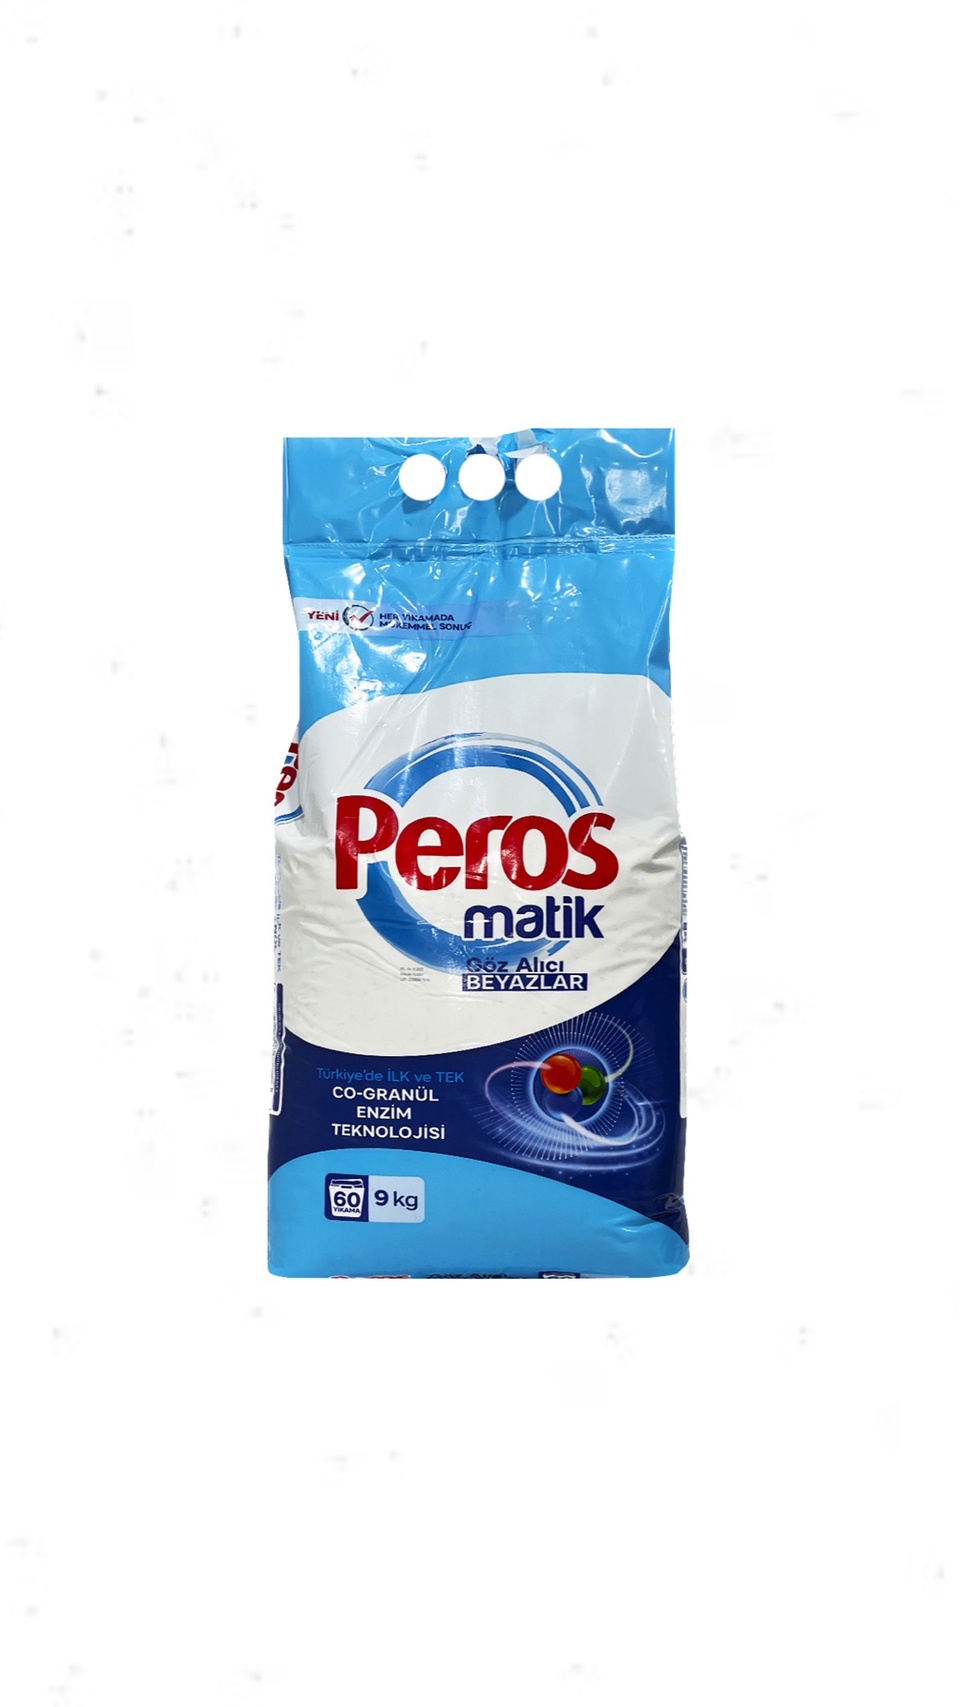 Стиральный порошок автомат для белого белья Peros гипоаллергенный эко 9кг - 1 350 ₽, заказать онлайн.